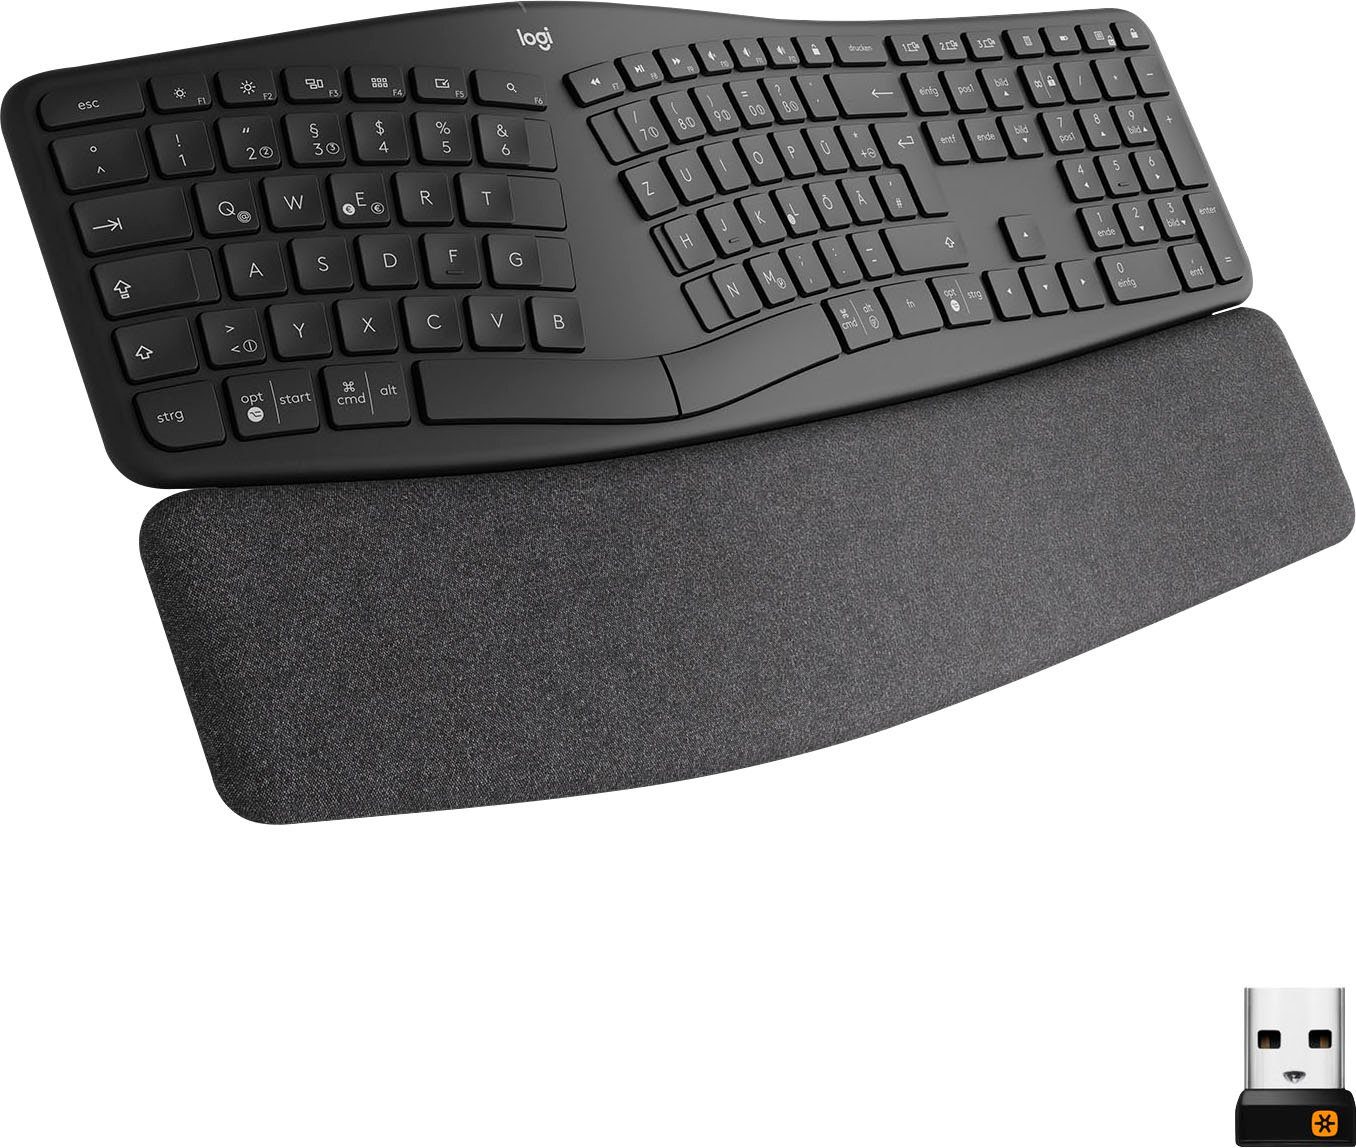 billig produzieren Logitech ERGO K860 ergonomische Tastatur